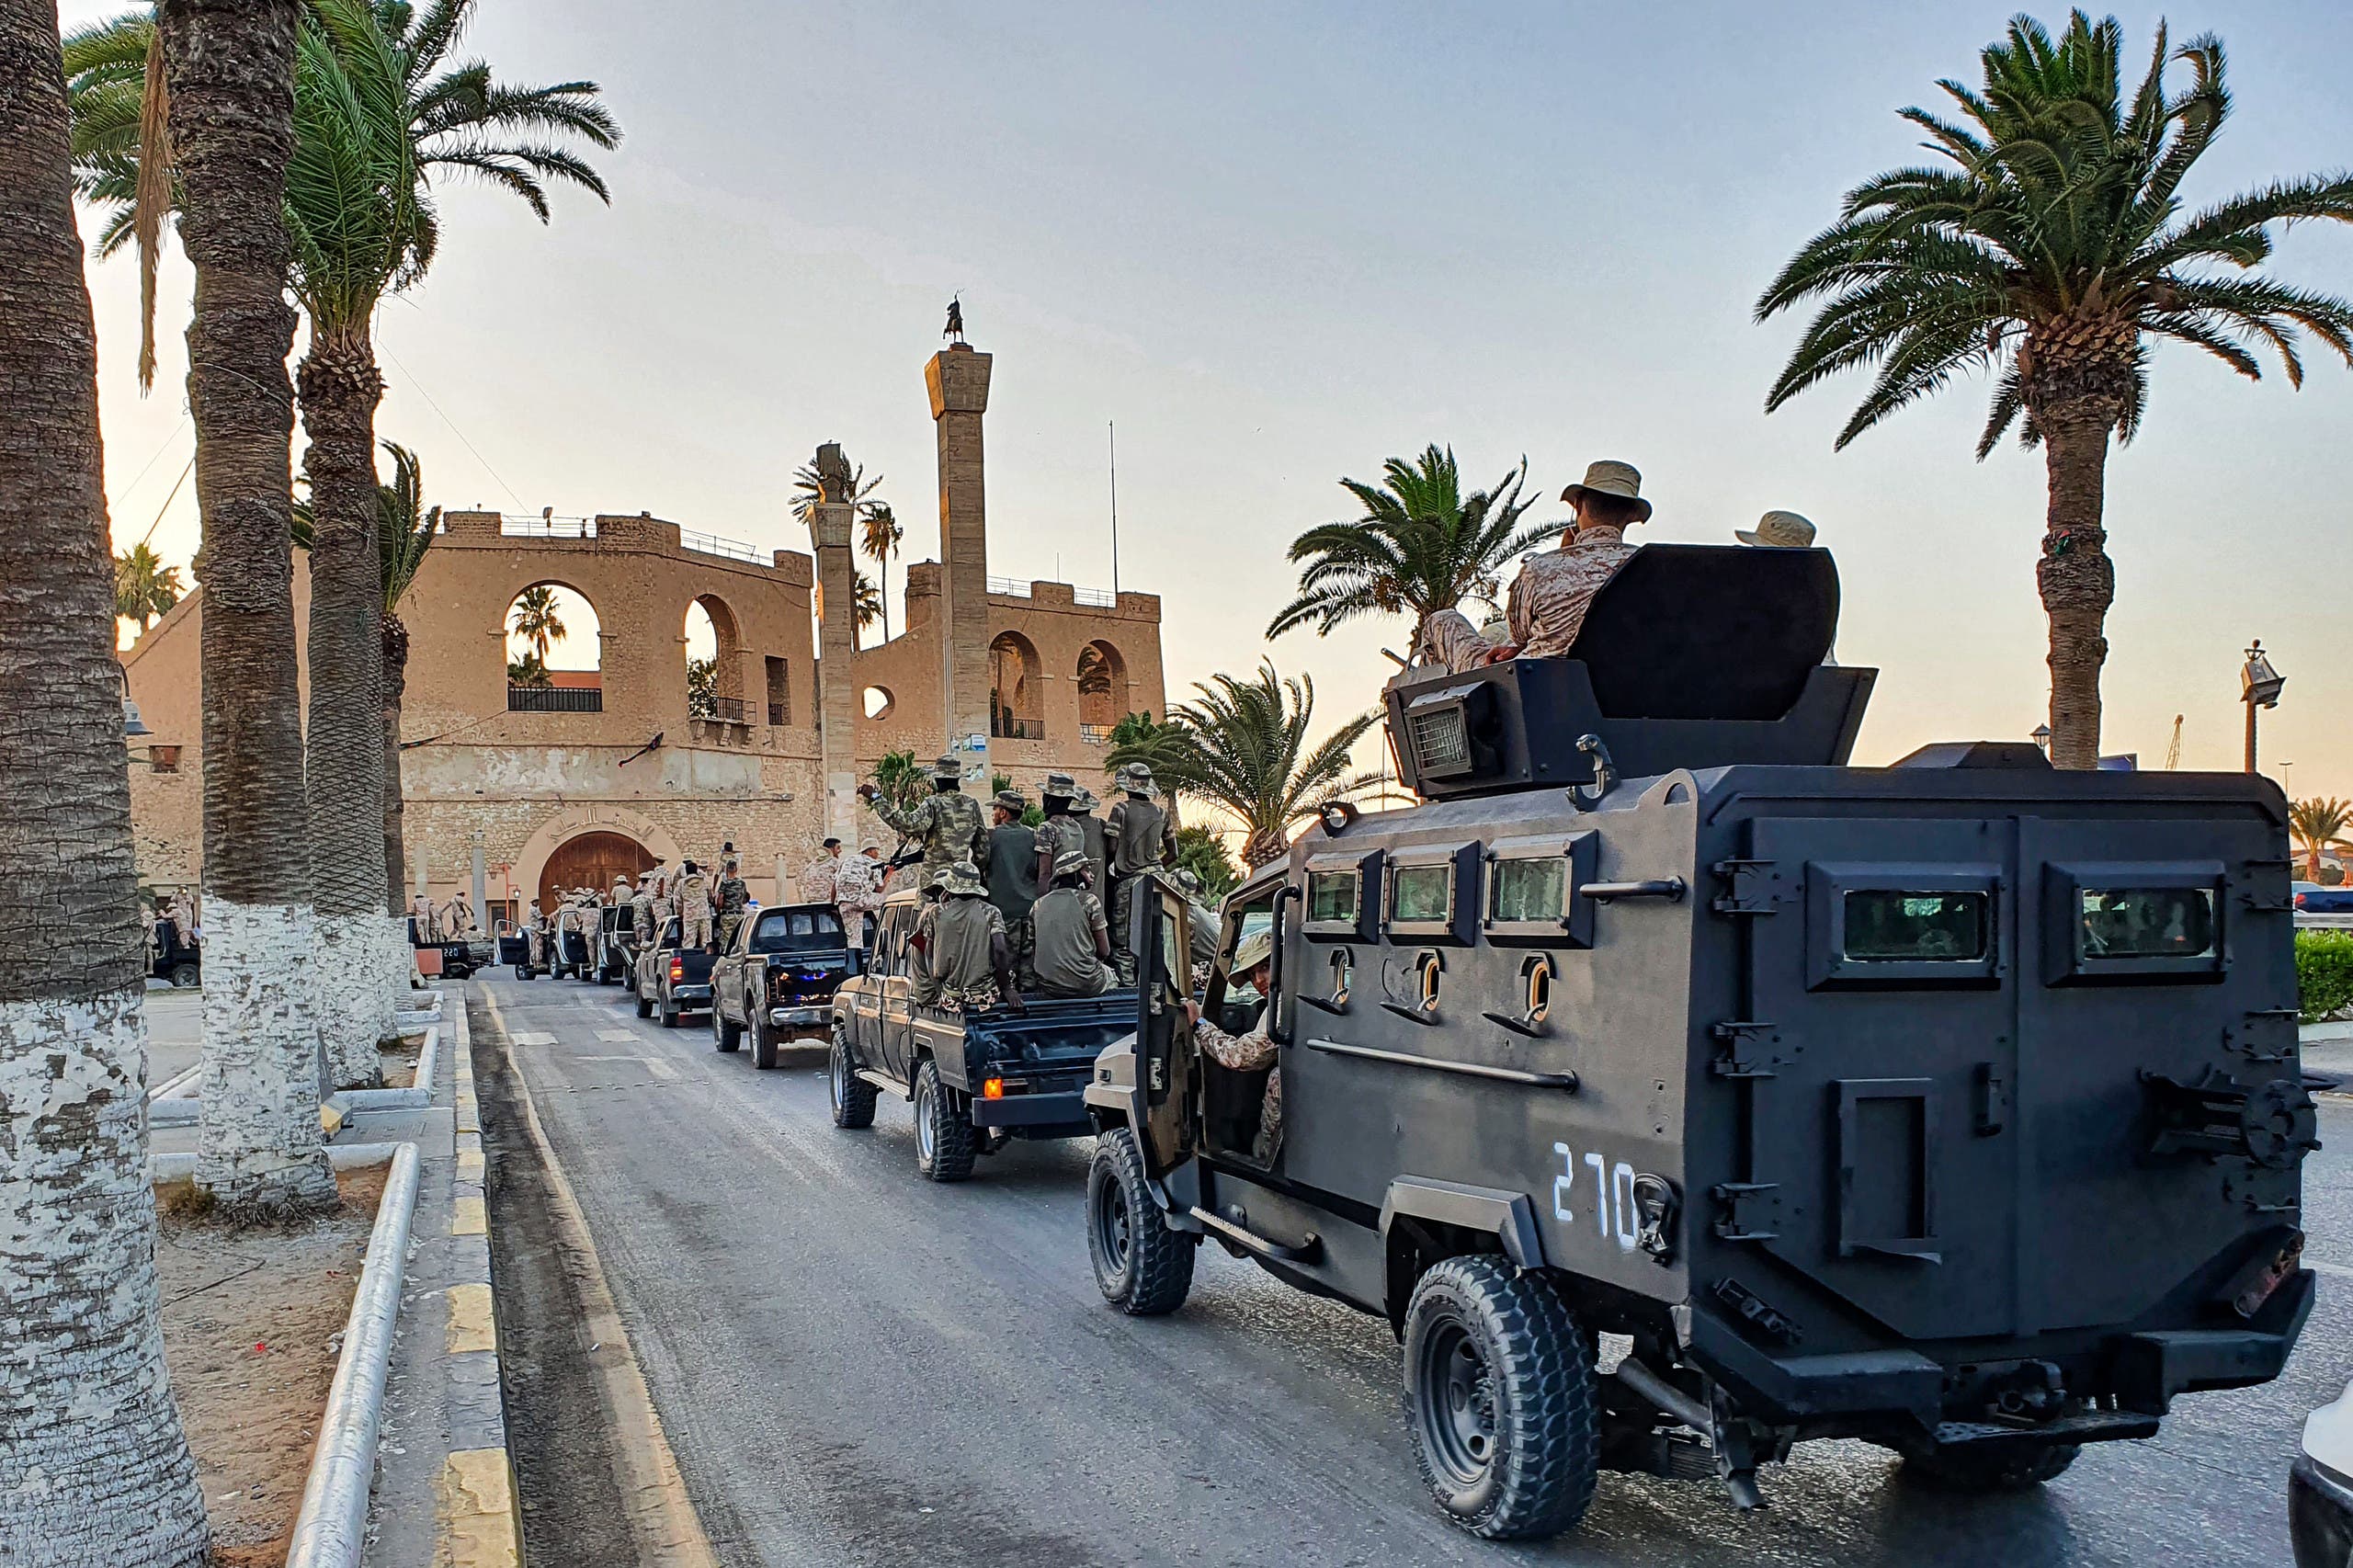 كتيبة ثوار طرابلس تستعرض في العاصمة الليبية (أرشيفية- فرانس برس)